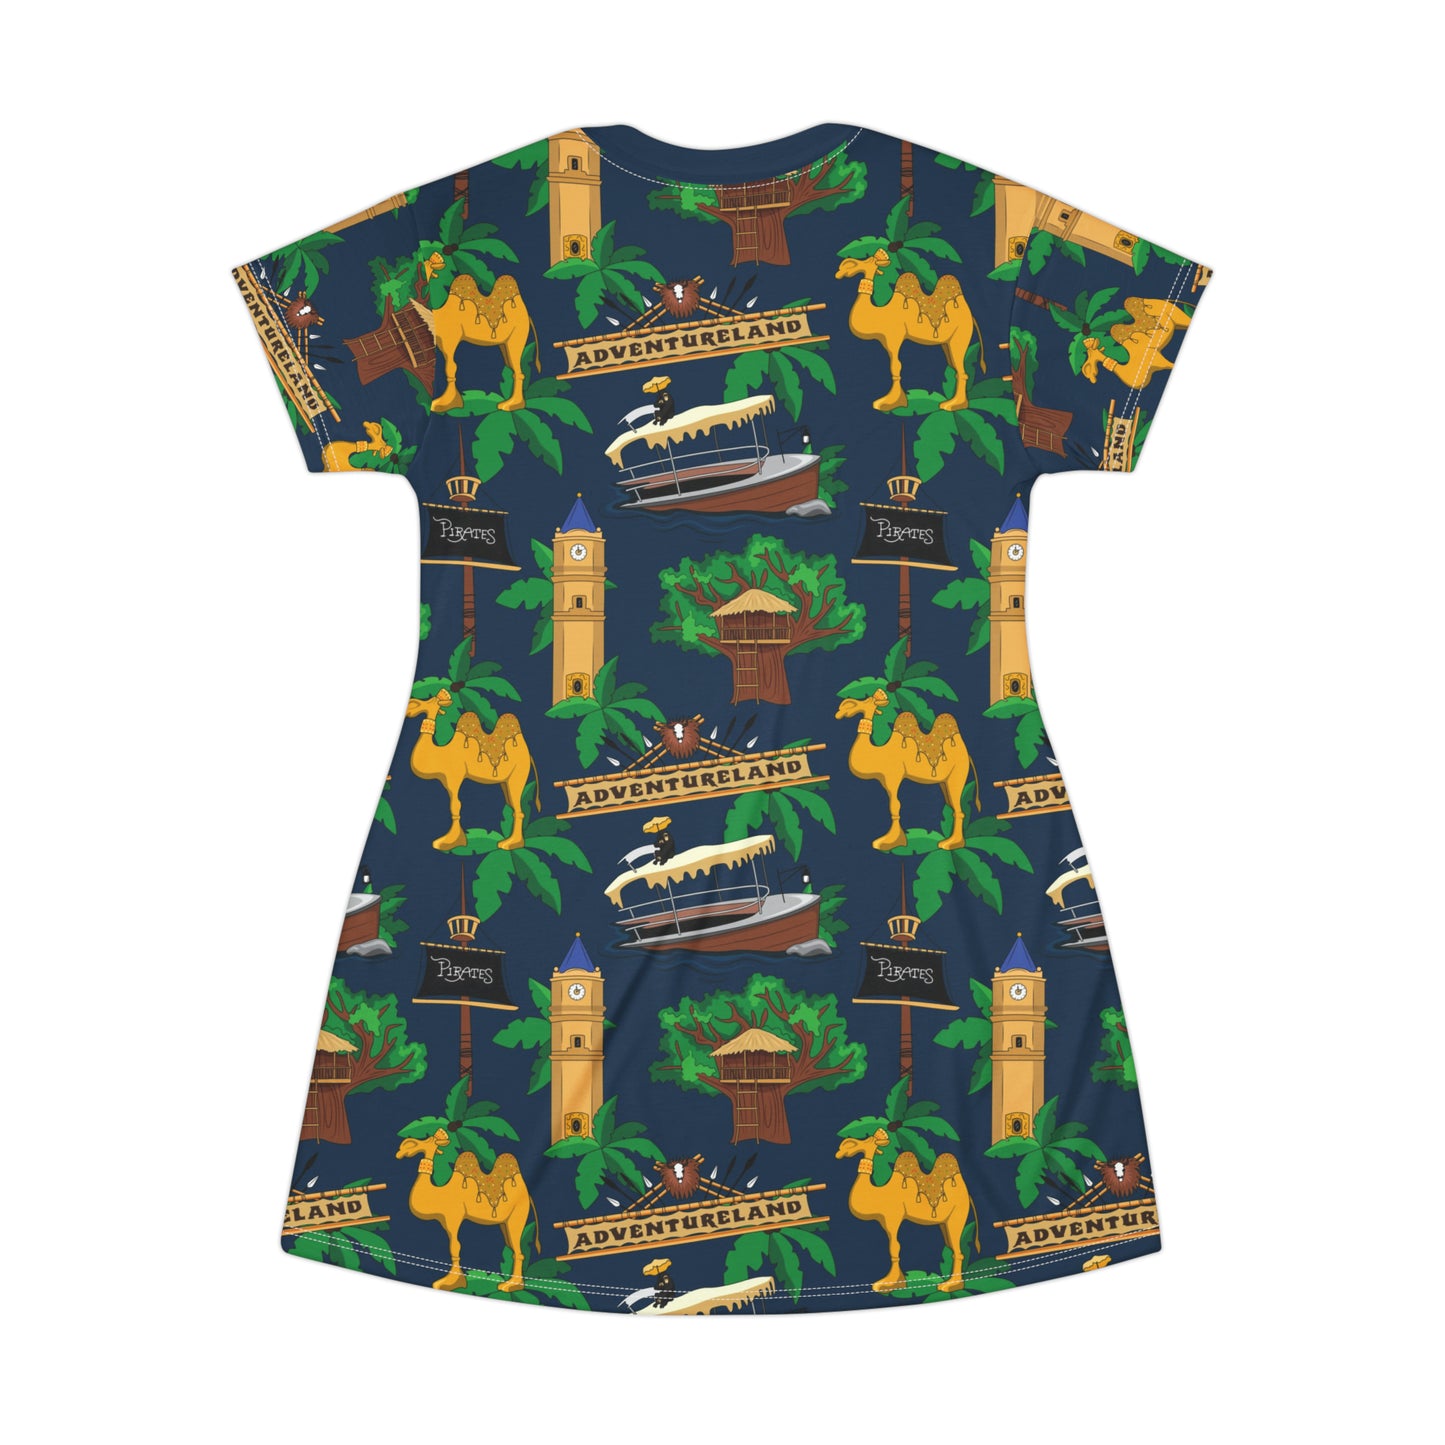 Adventureland T-Shirt Dress